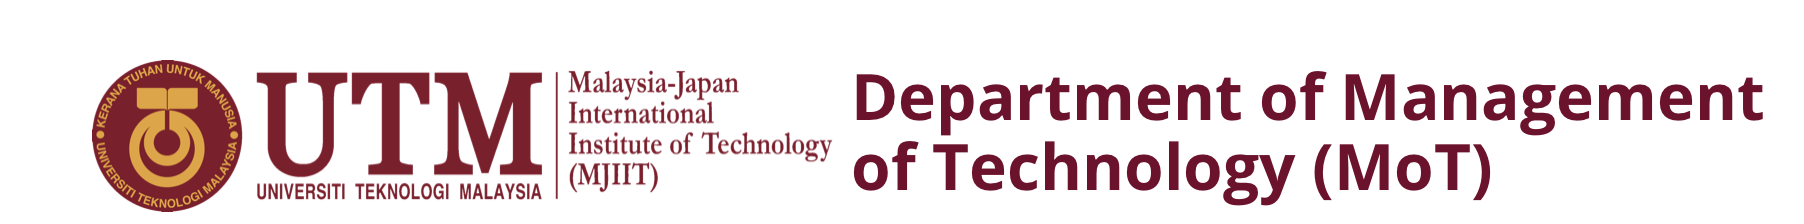 Management of Technology (MOT) Department